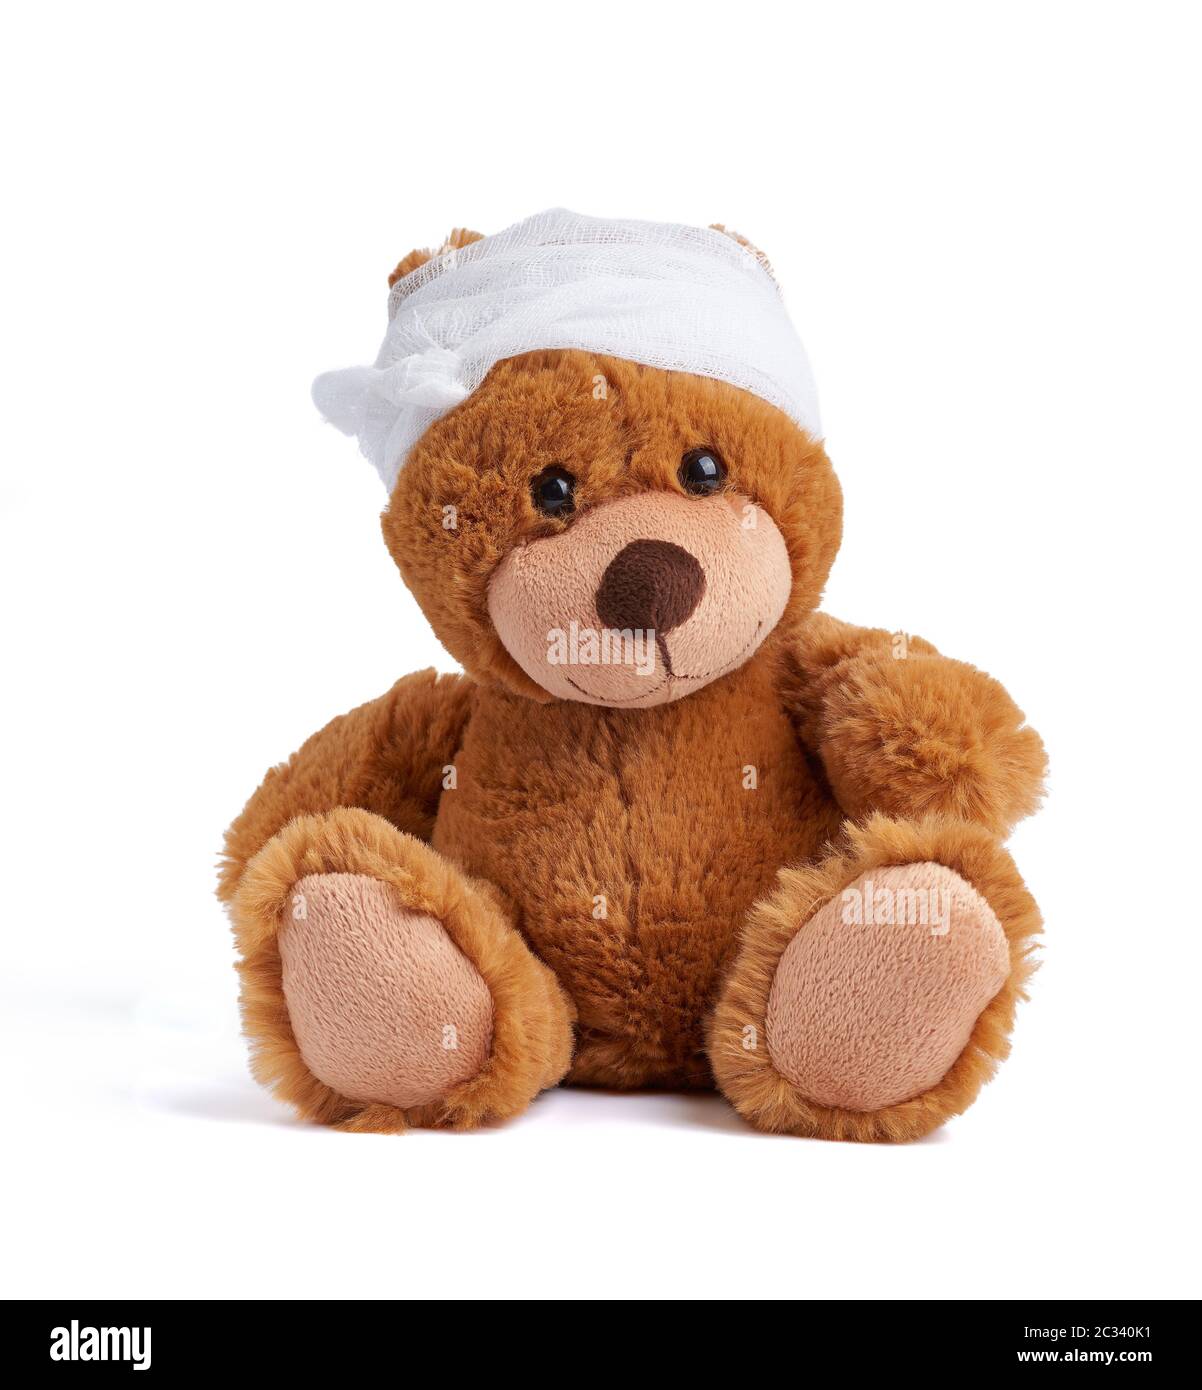 ours en peluche brun avec une tête bandée dans un bandage médical blanc sur un fond blanc, concept de traumatisme d'enfant, maux de tête Banque D'Images